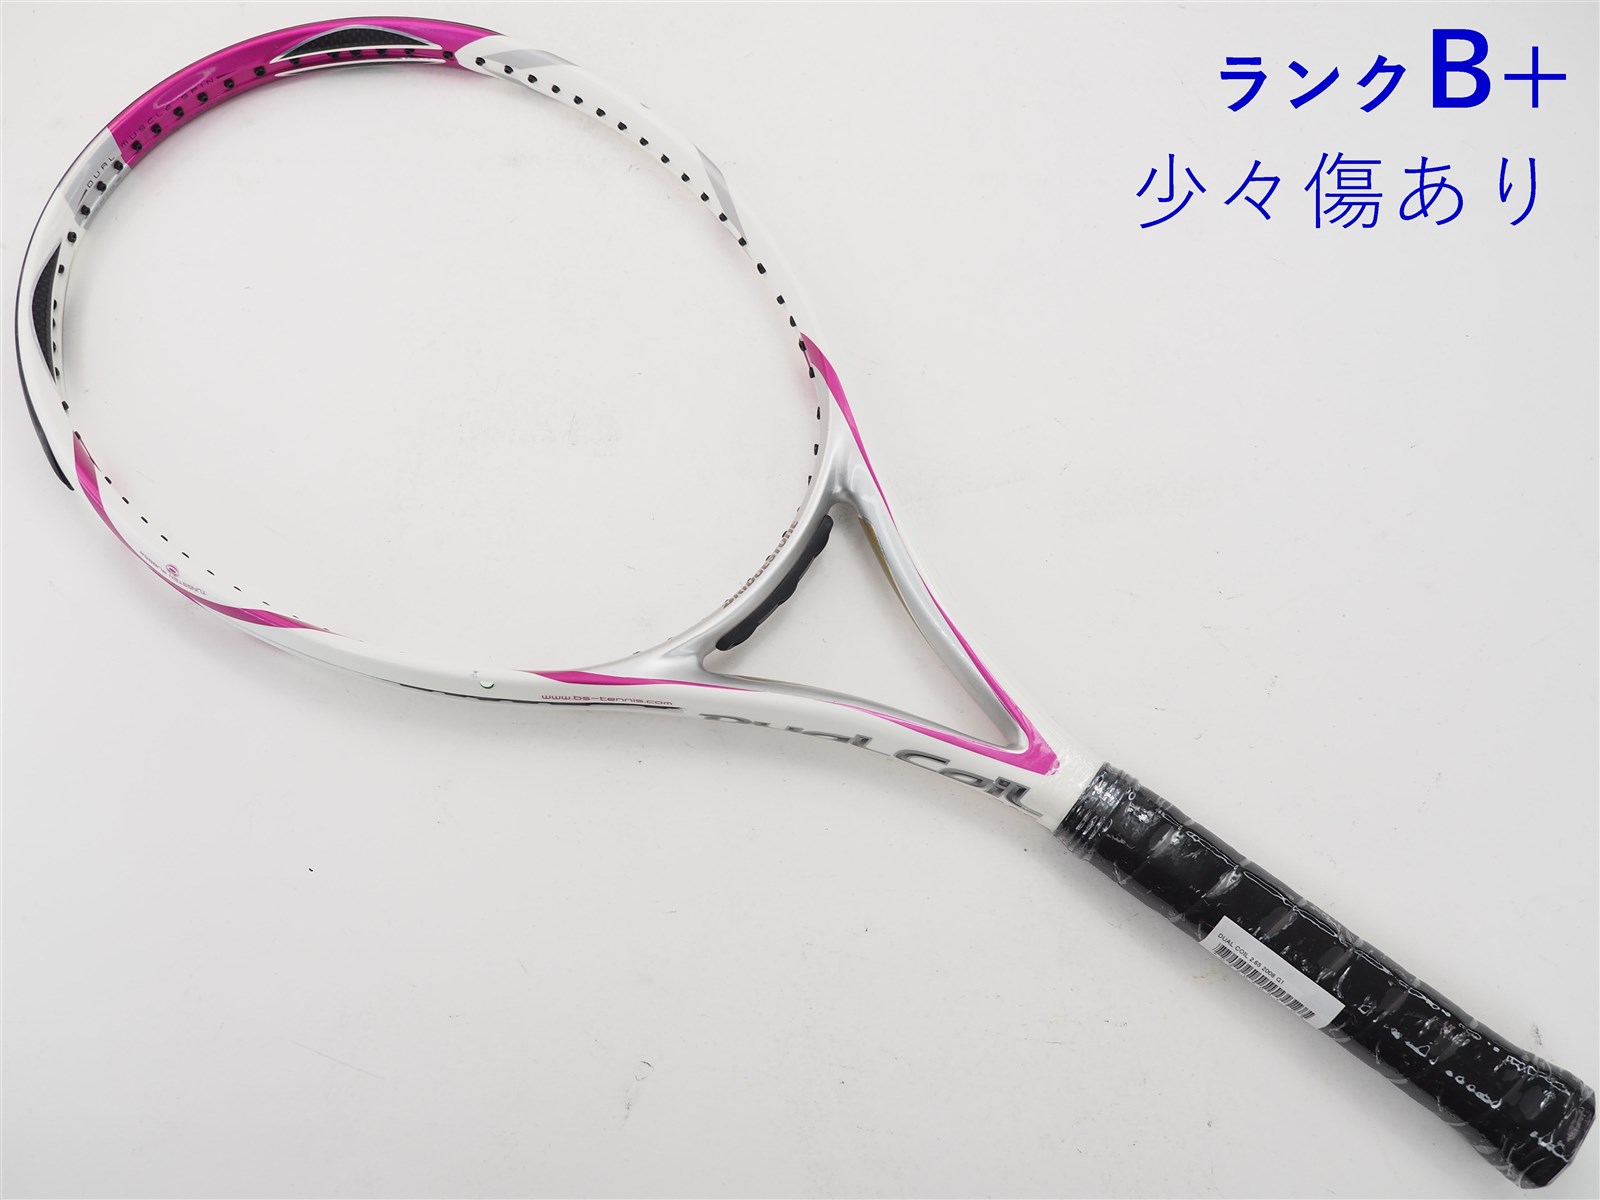 テニスラケット ブリヂストン デュアル コイル 2.65 2008年モデル (G2